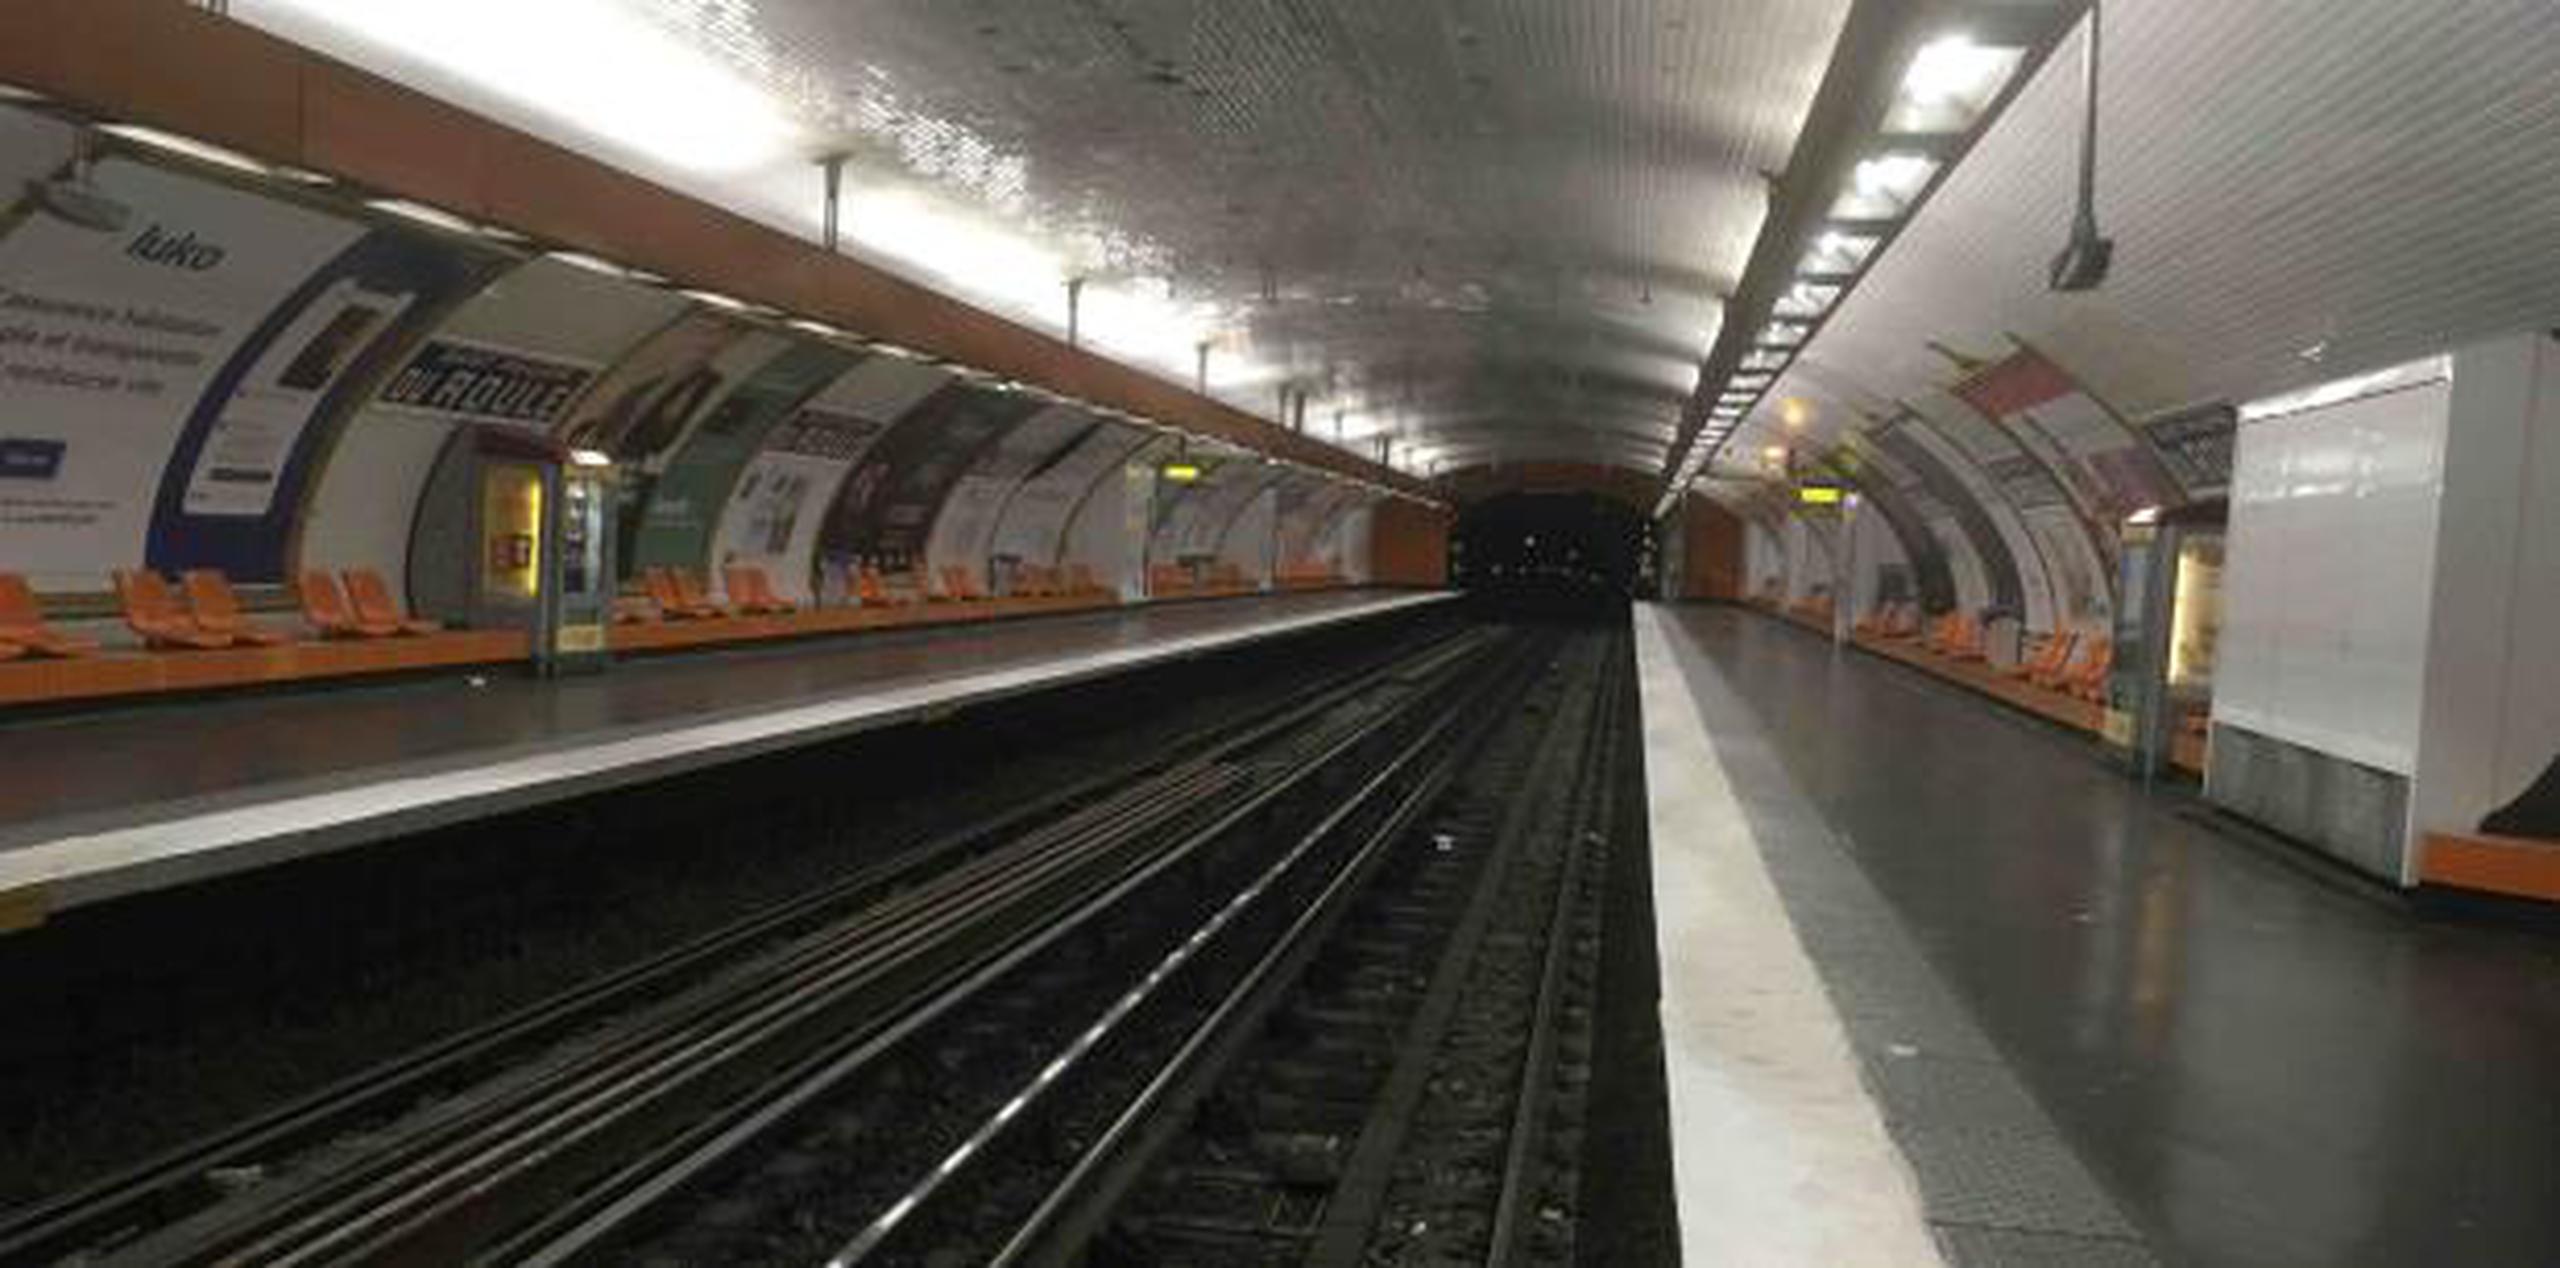 El paro cerró 10 líneas de metro y otras sufrieron graves interrupciones. (AP / Bertrand Combaldieu)